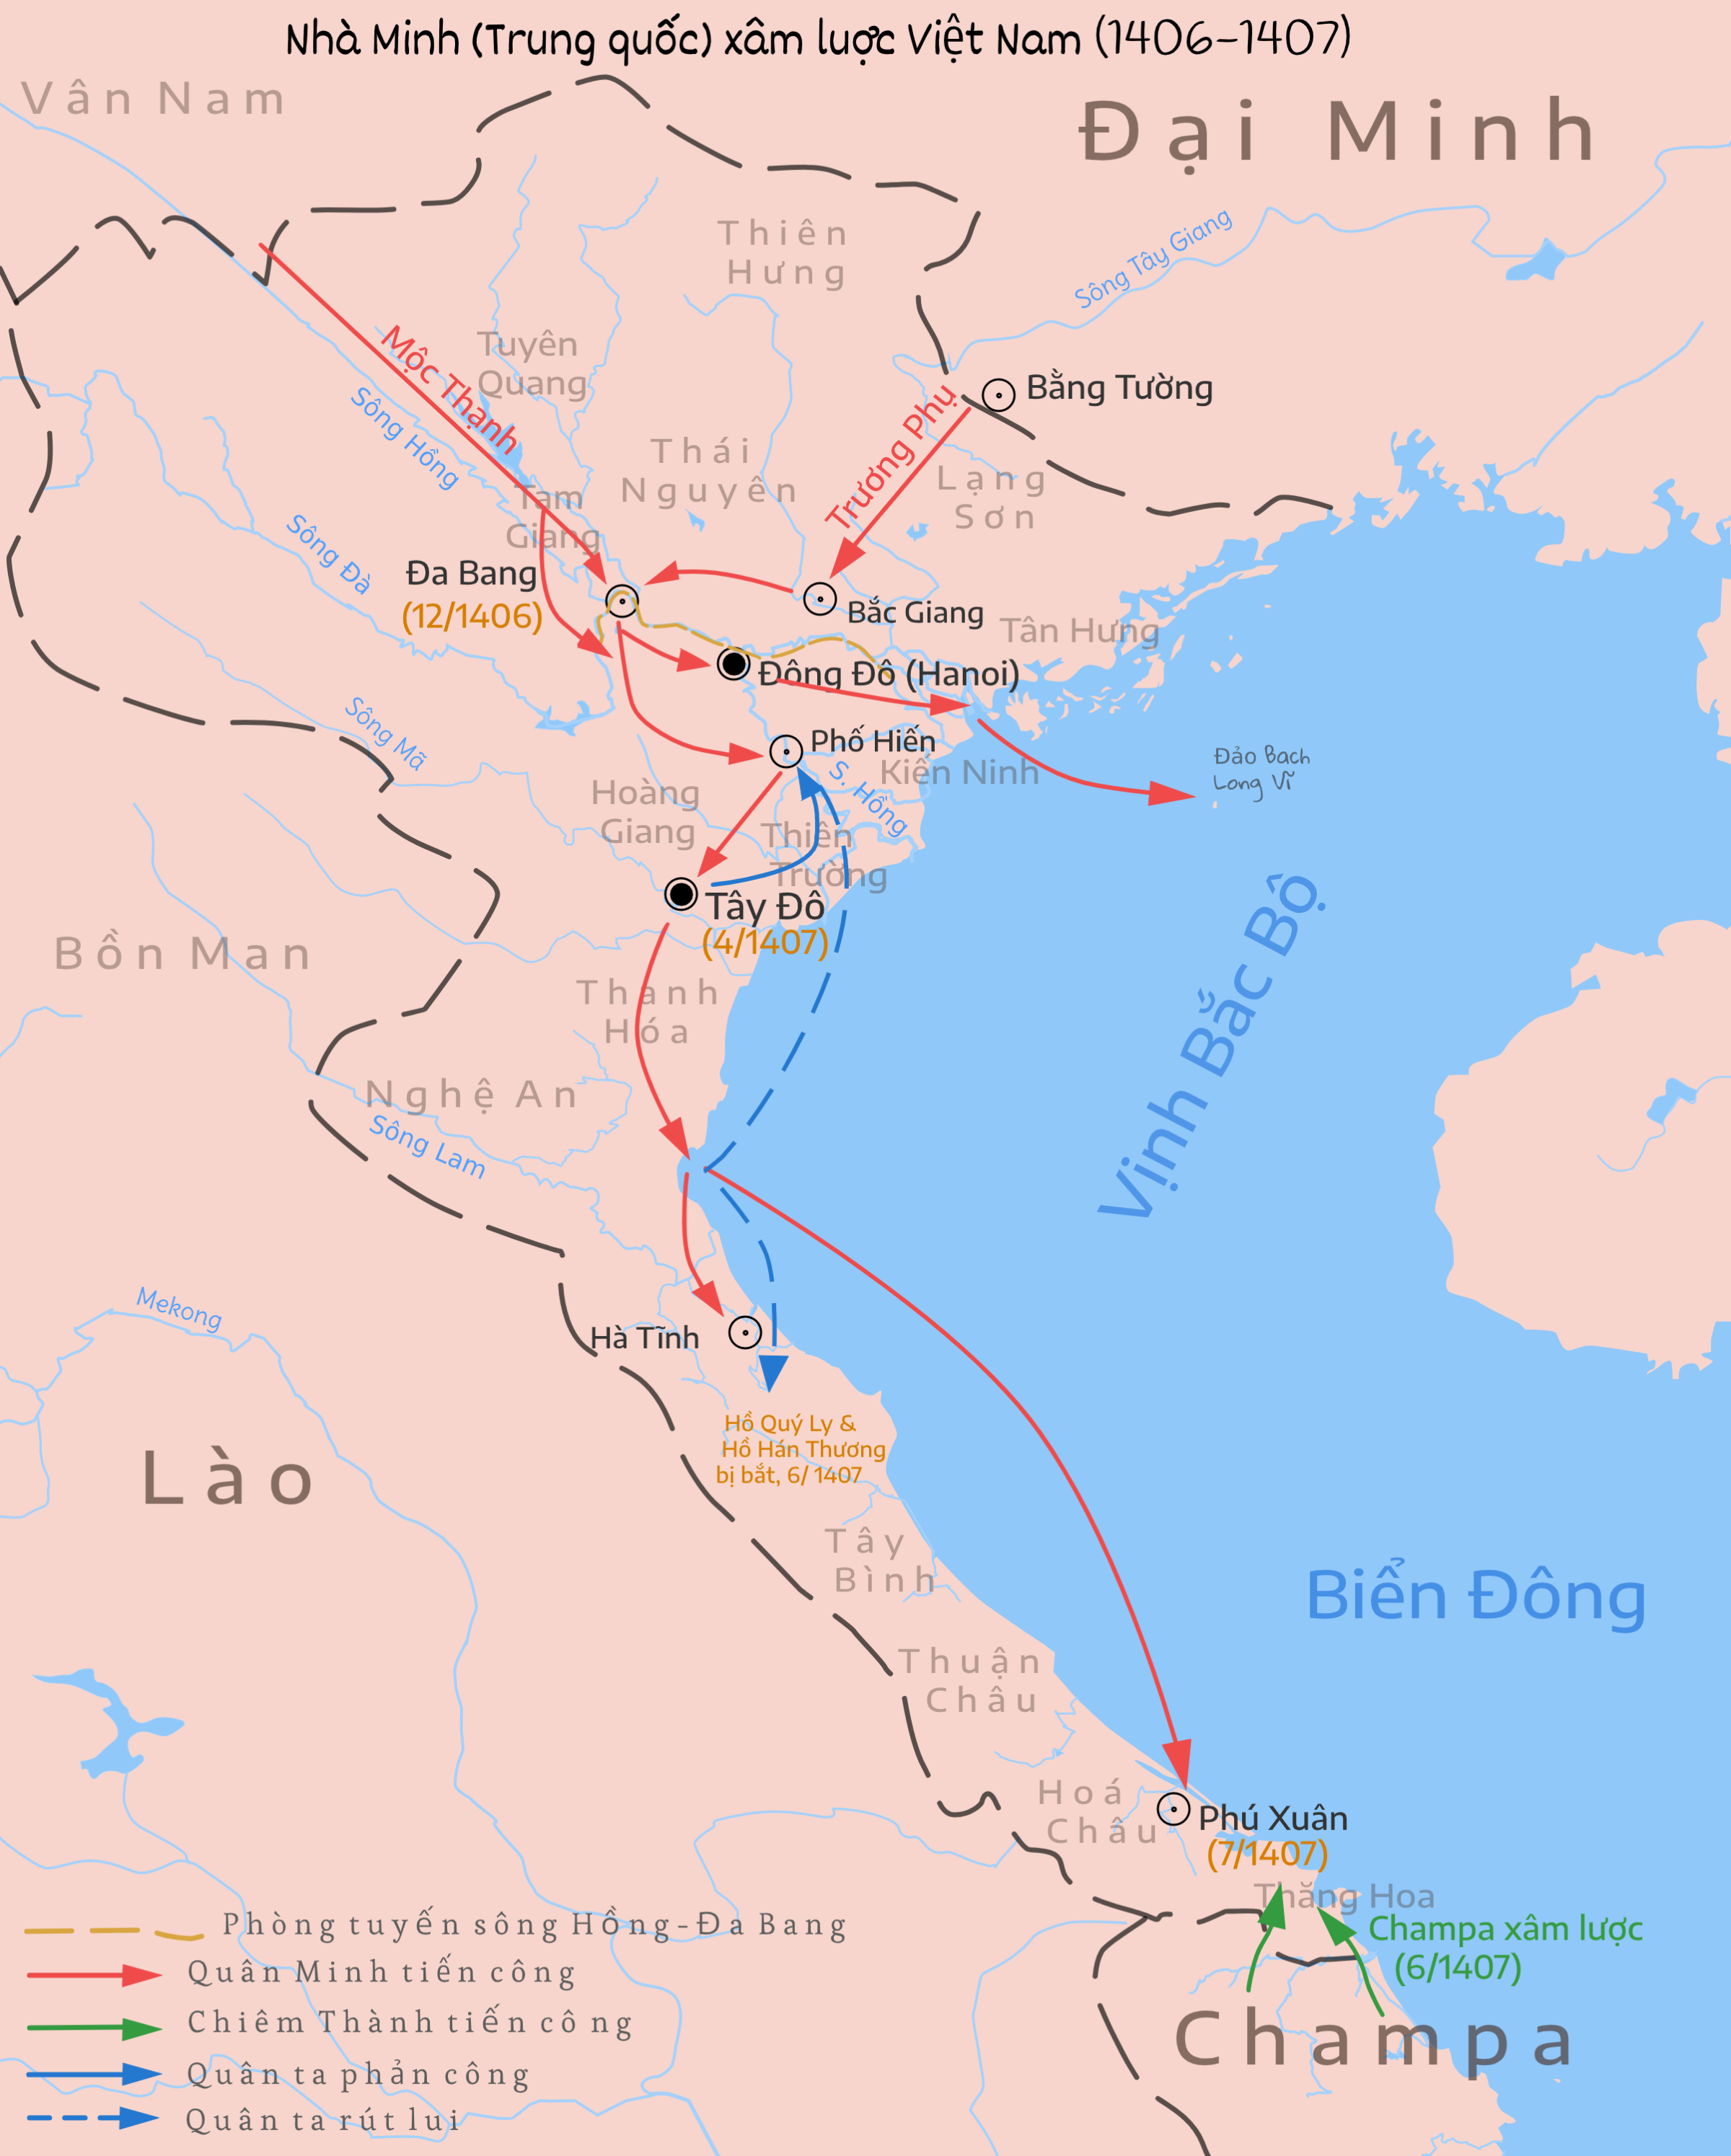 Chiến tranh Đại Ngu–Đại Minh – Wikipedia tiếng Việt